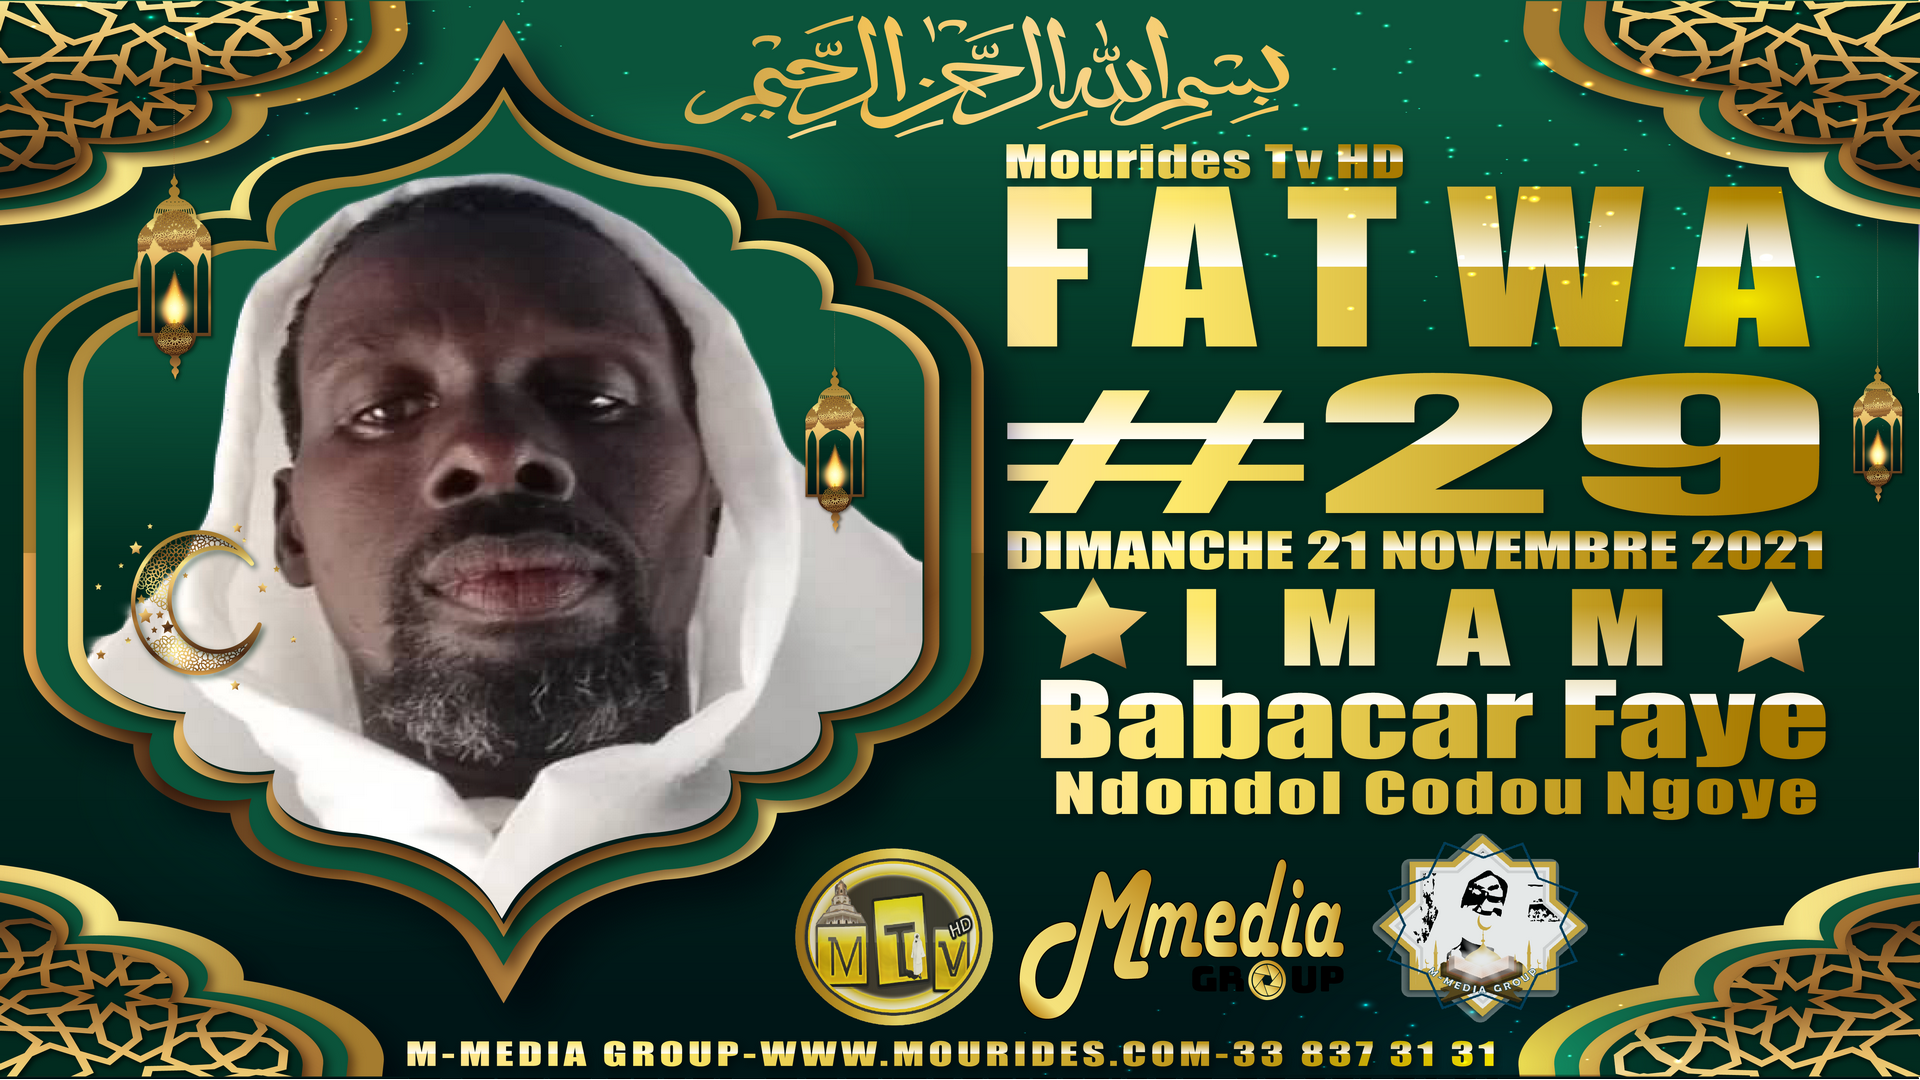 Fatwa فتوى (Consultation juridique islamique #29) Imam Babacar FAYE - Dimanche 21 novembre 2021